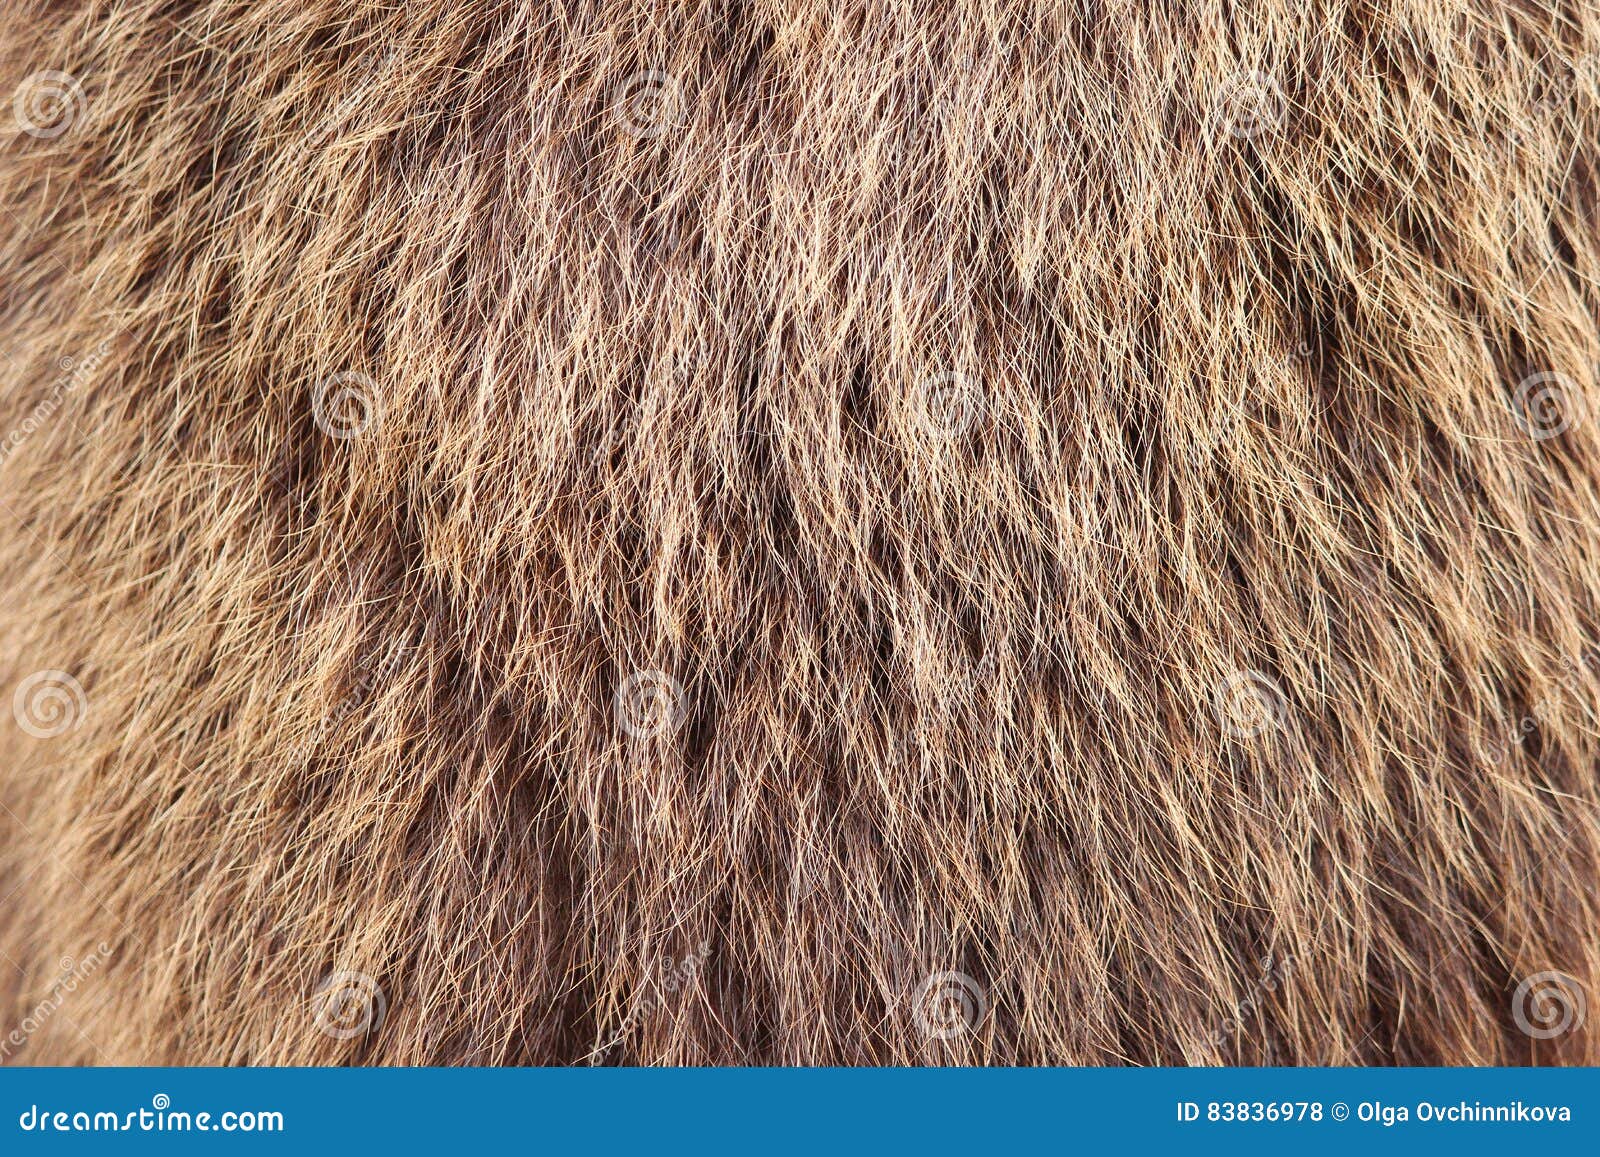 texture brown siberian bear ursidae skins